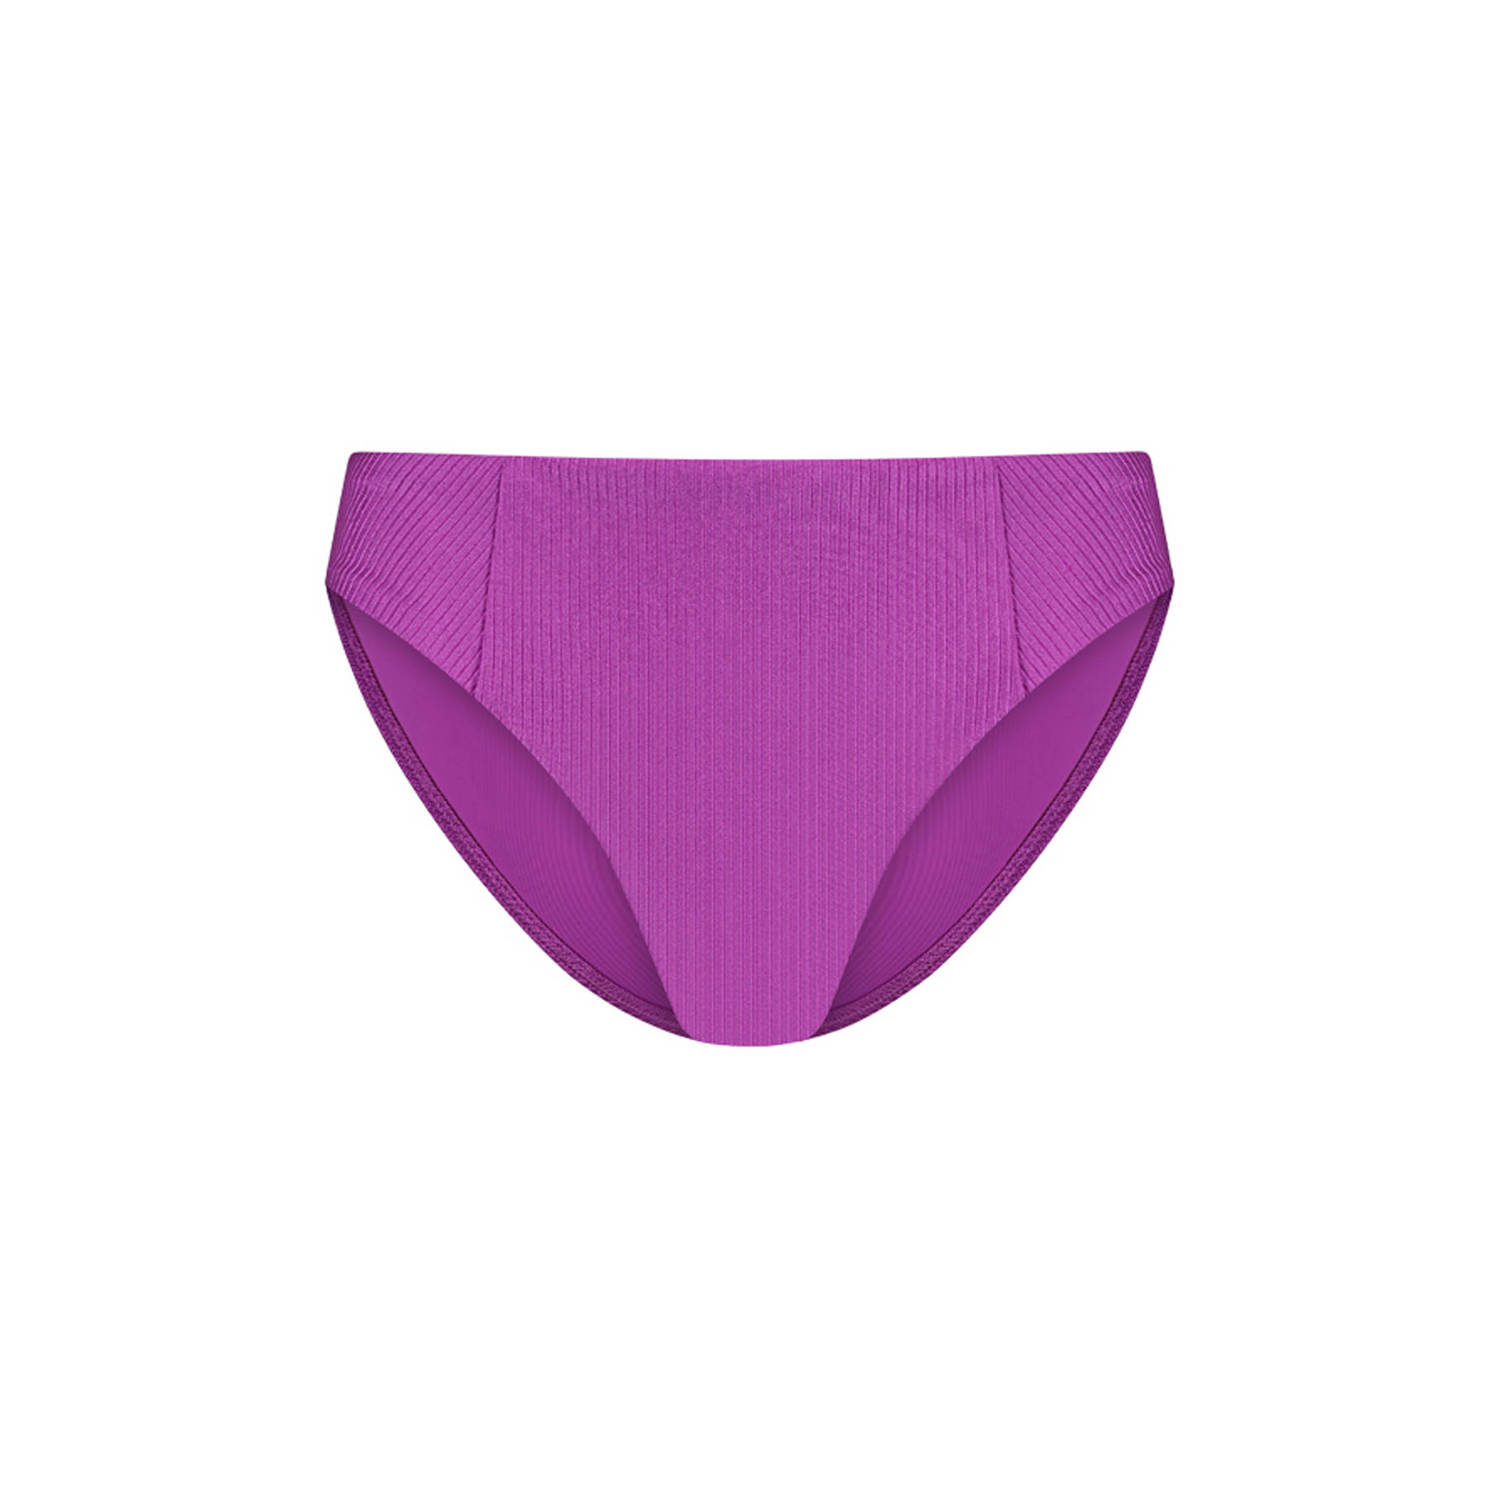 Cyell bikinibroekje met ribstructuur paars